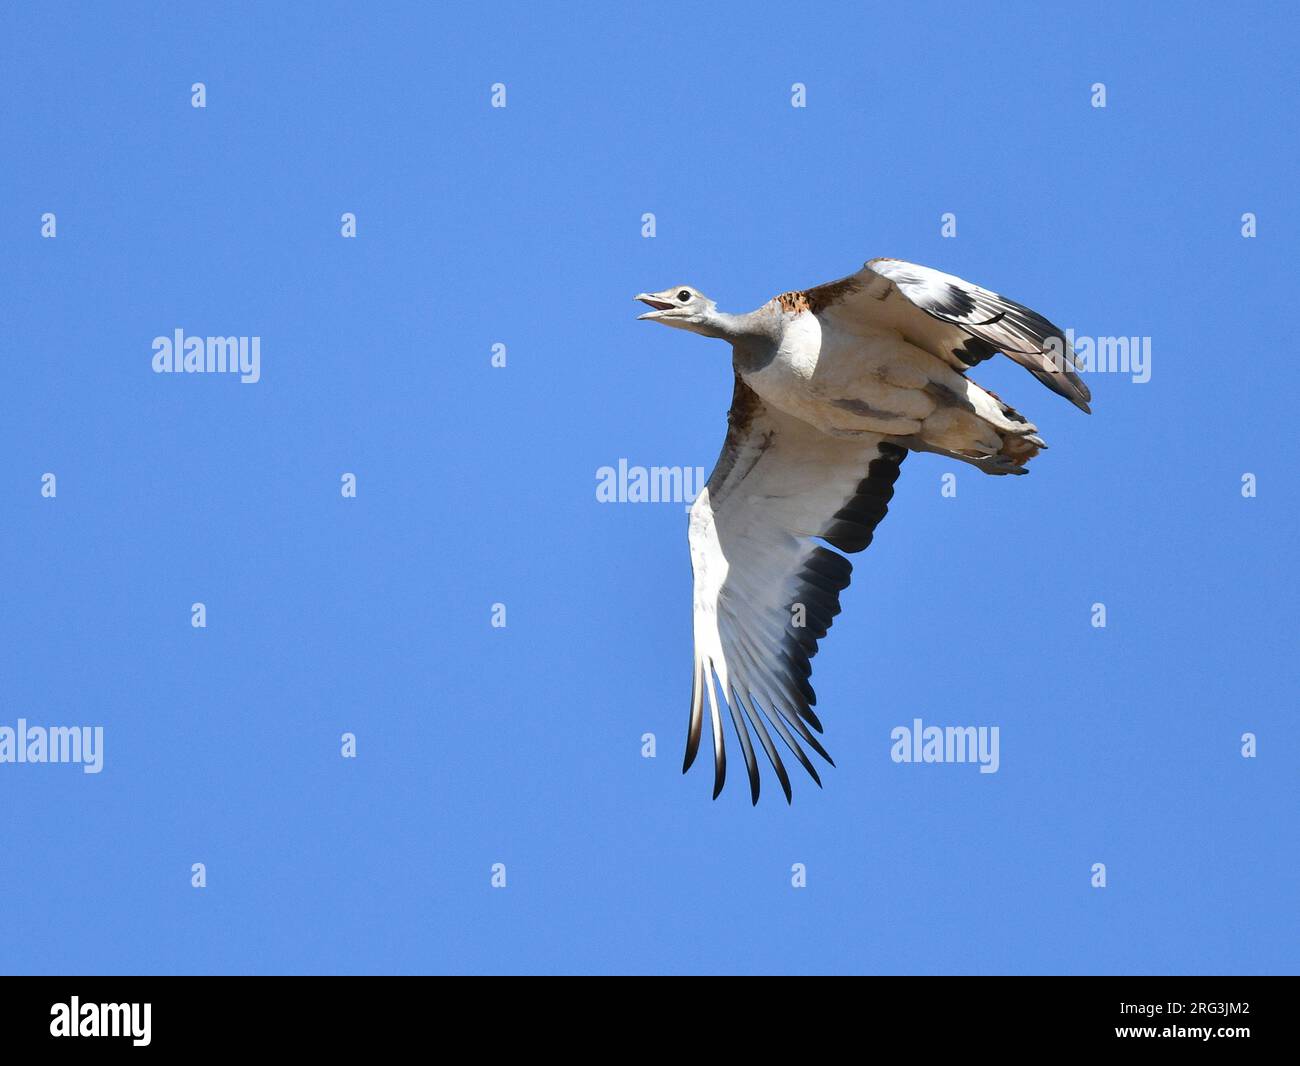 Great Bustard (Otis tarda) in flight during autumn in the Iberian peninsula. Stock Photo